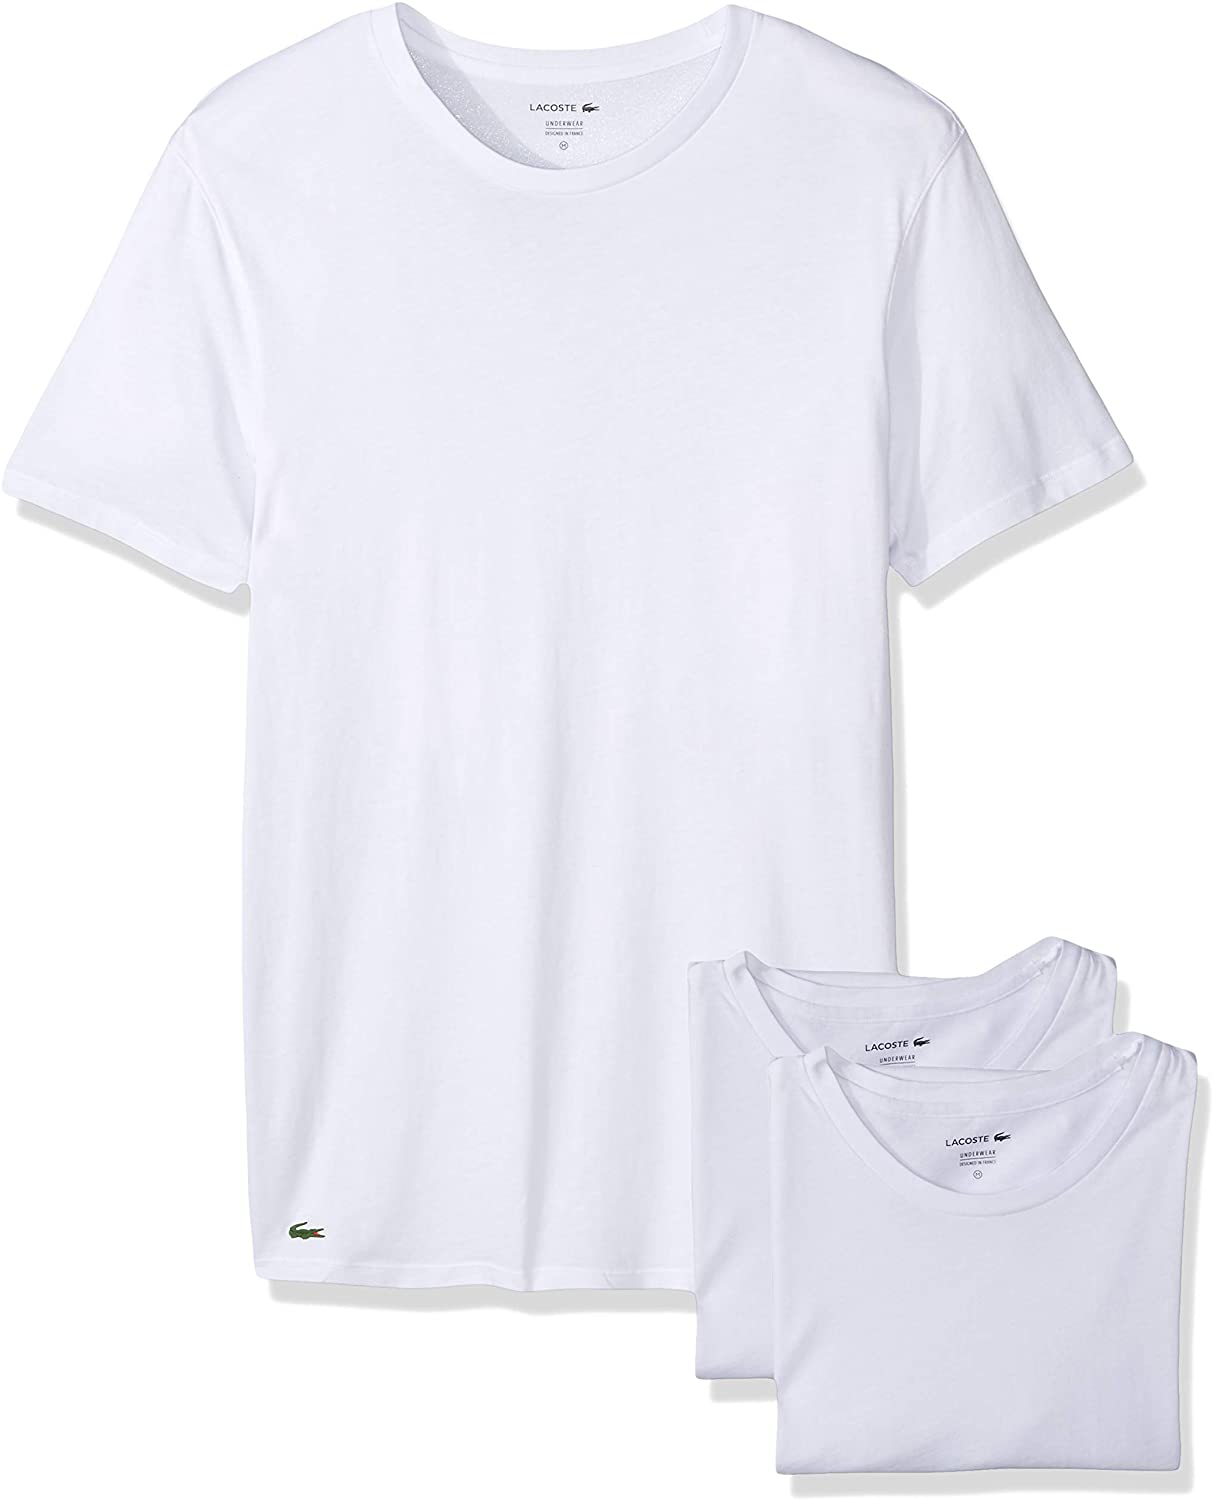 Lacoste Men's Cotton Crew-Neck T-Shirt Undershirt